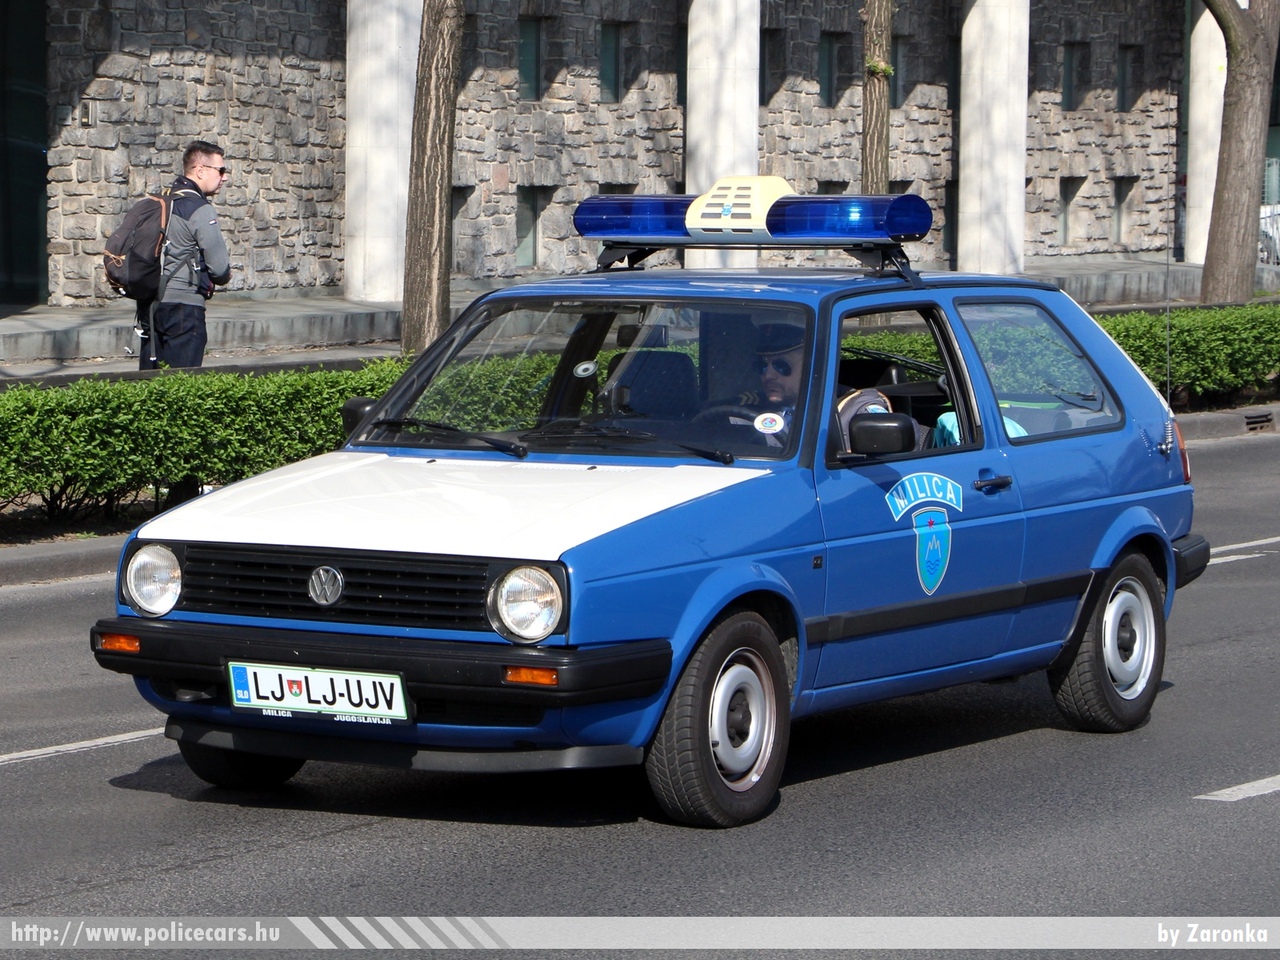 Volkswagen Golf II 1989, korábbi jugoszláv Milica, fotó: Zaronka
Keywords: szlovén Szlovénia rendőr rendőrautó rendőrség police policecar Slovenia slovenian